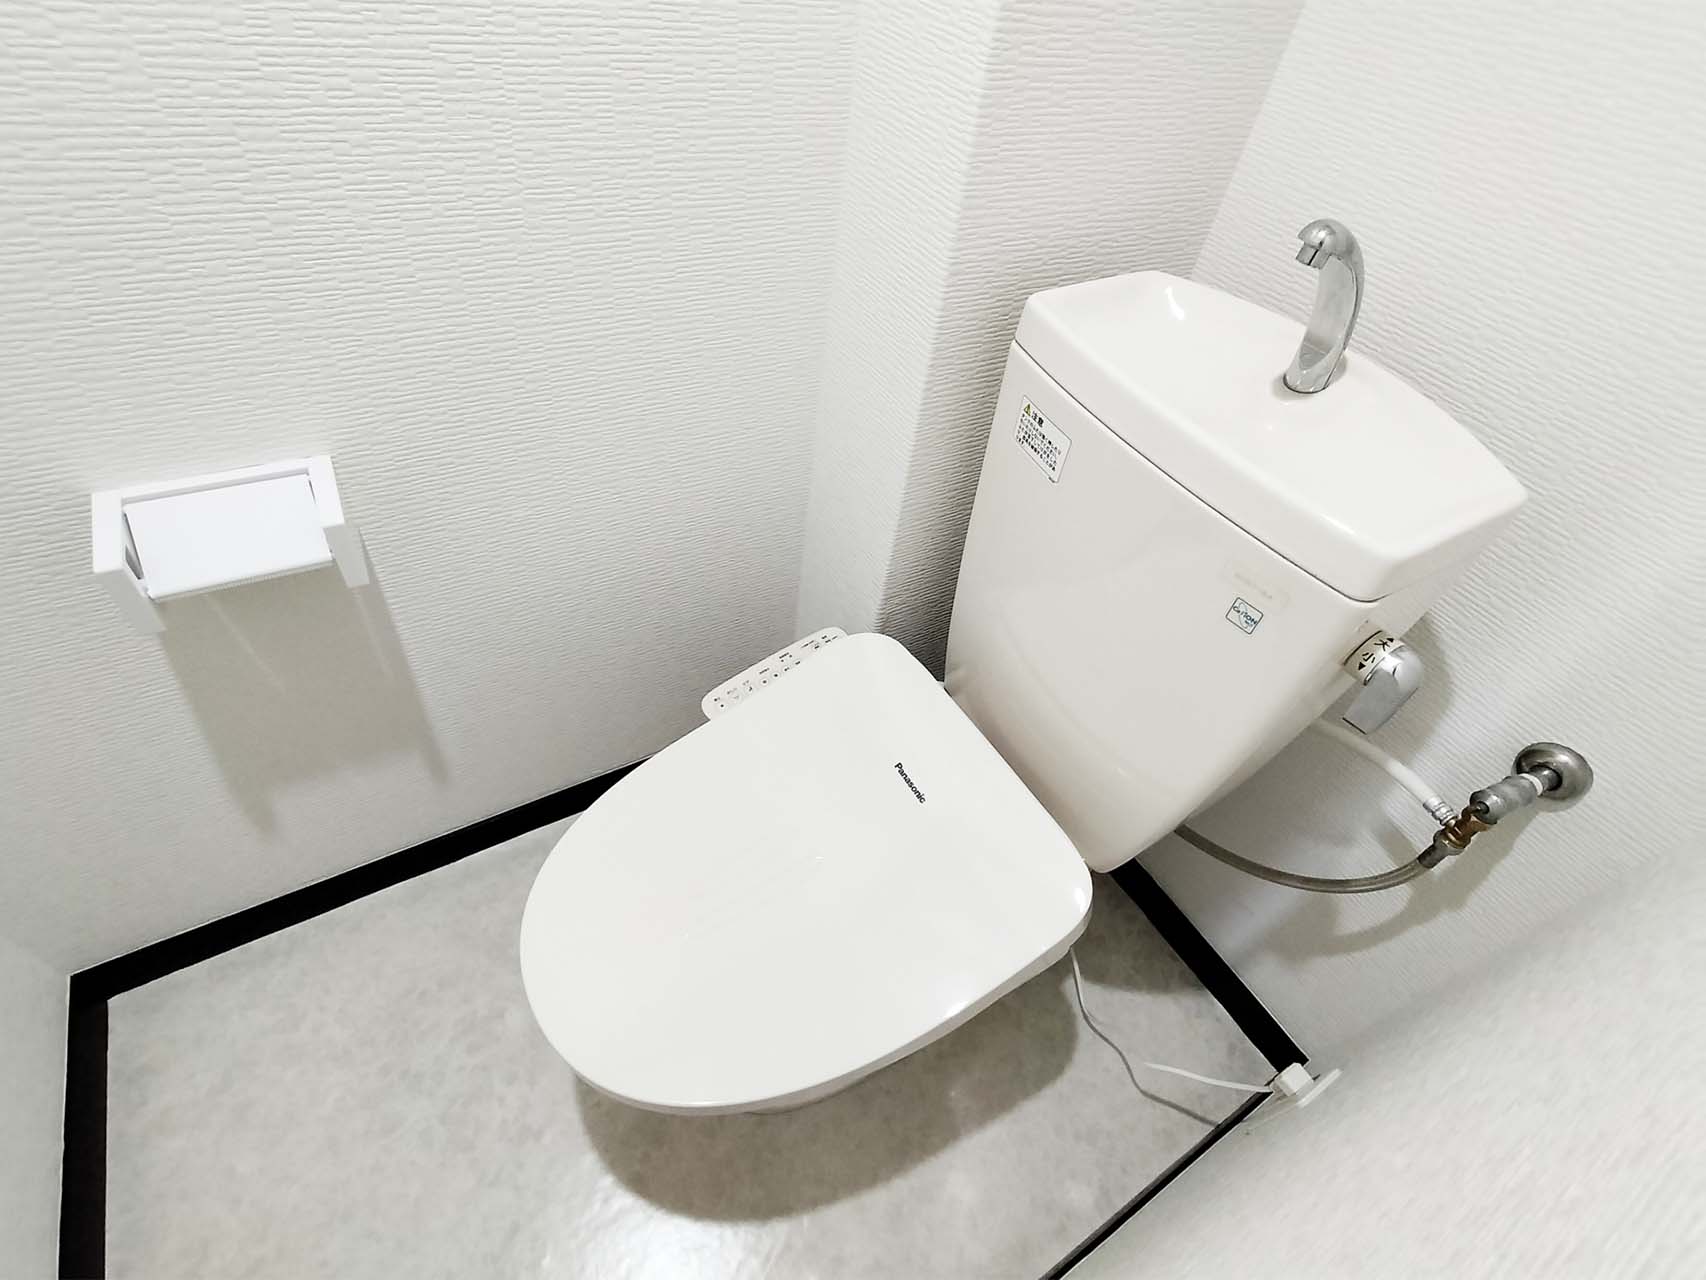 止水栓によるトイレタンク水量の調整方法